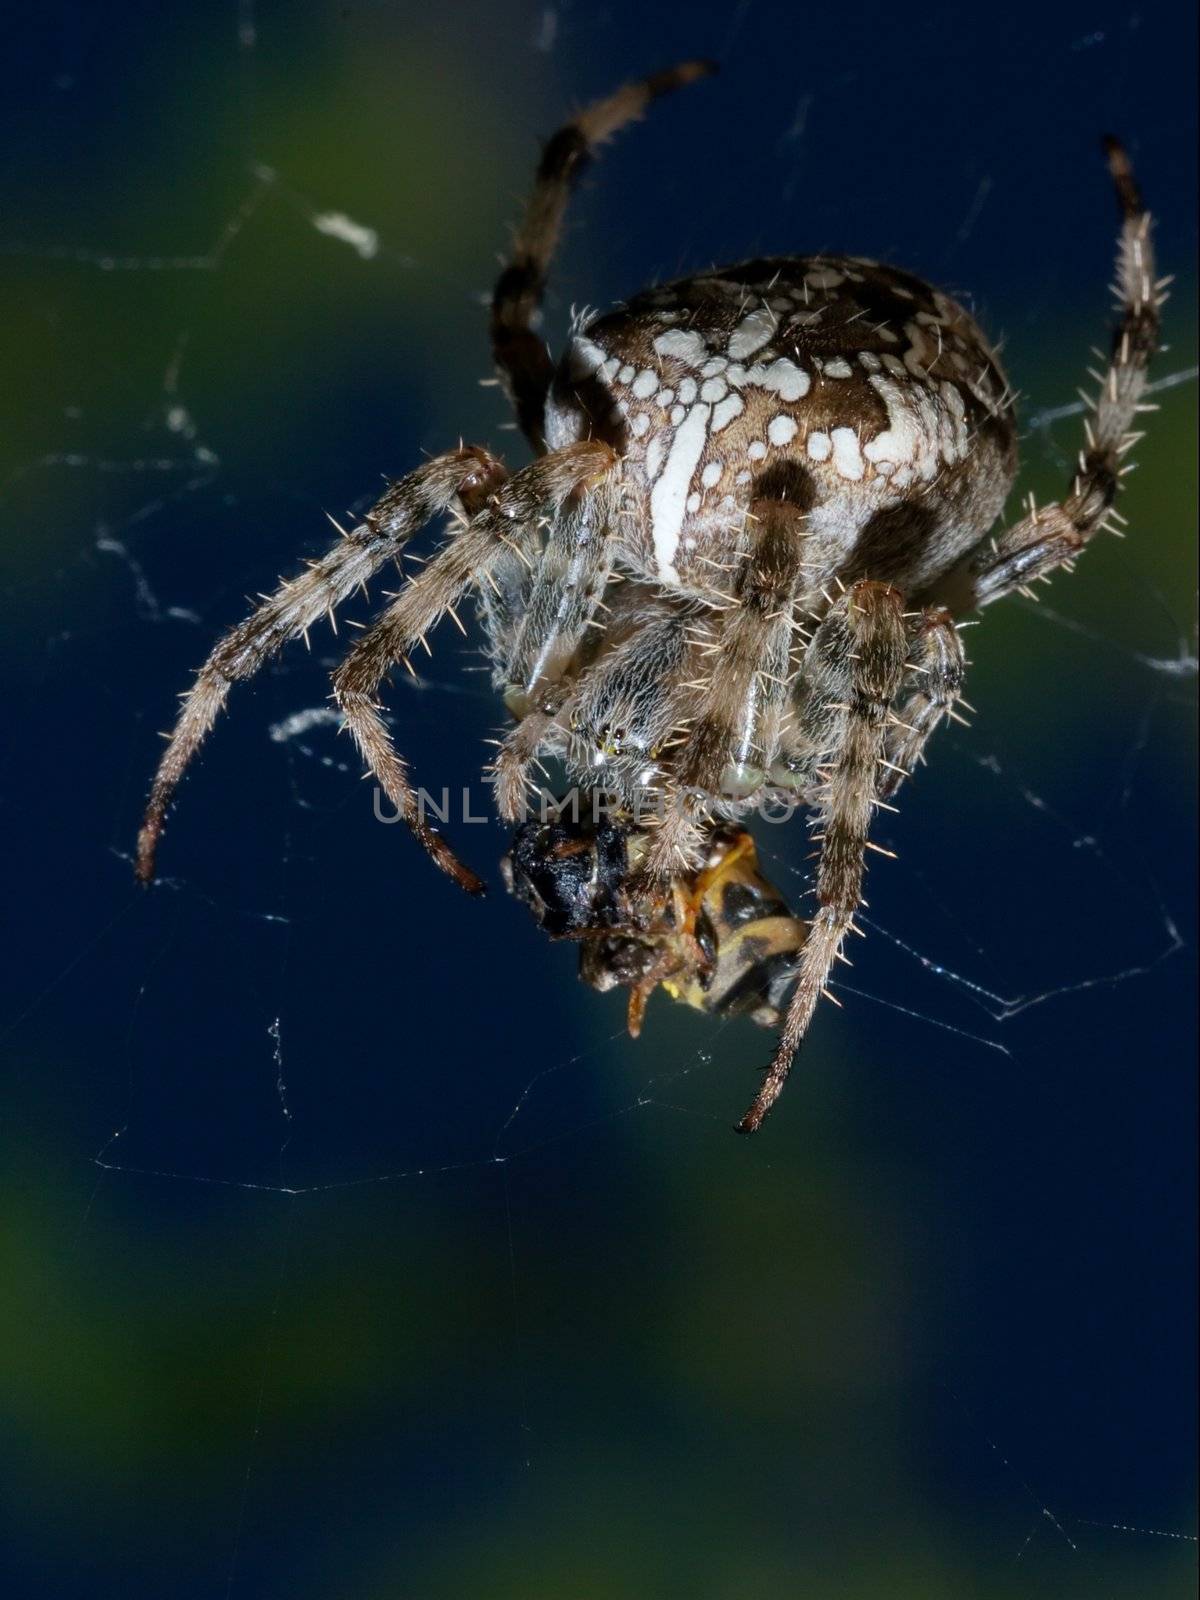 Spider by Gudella